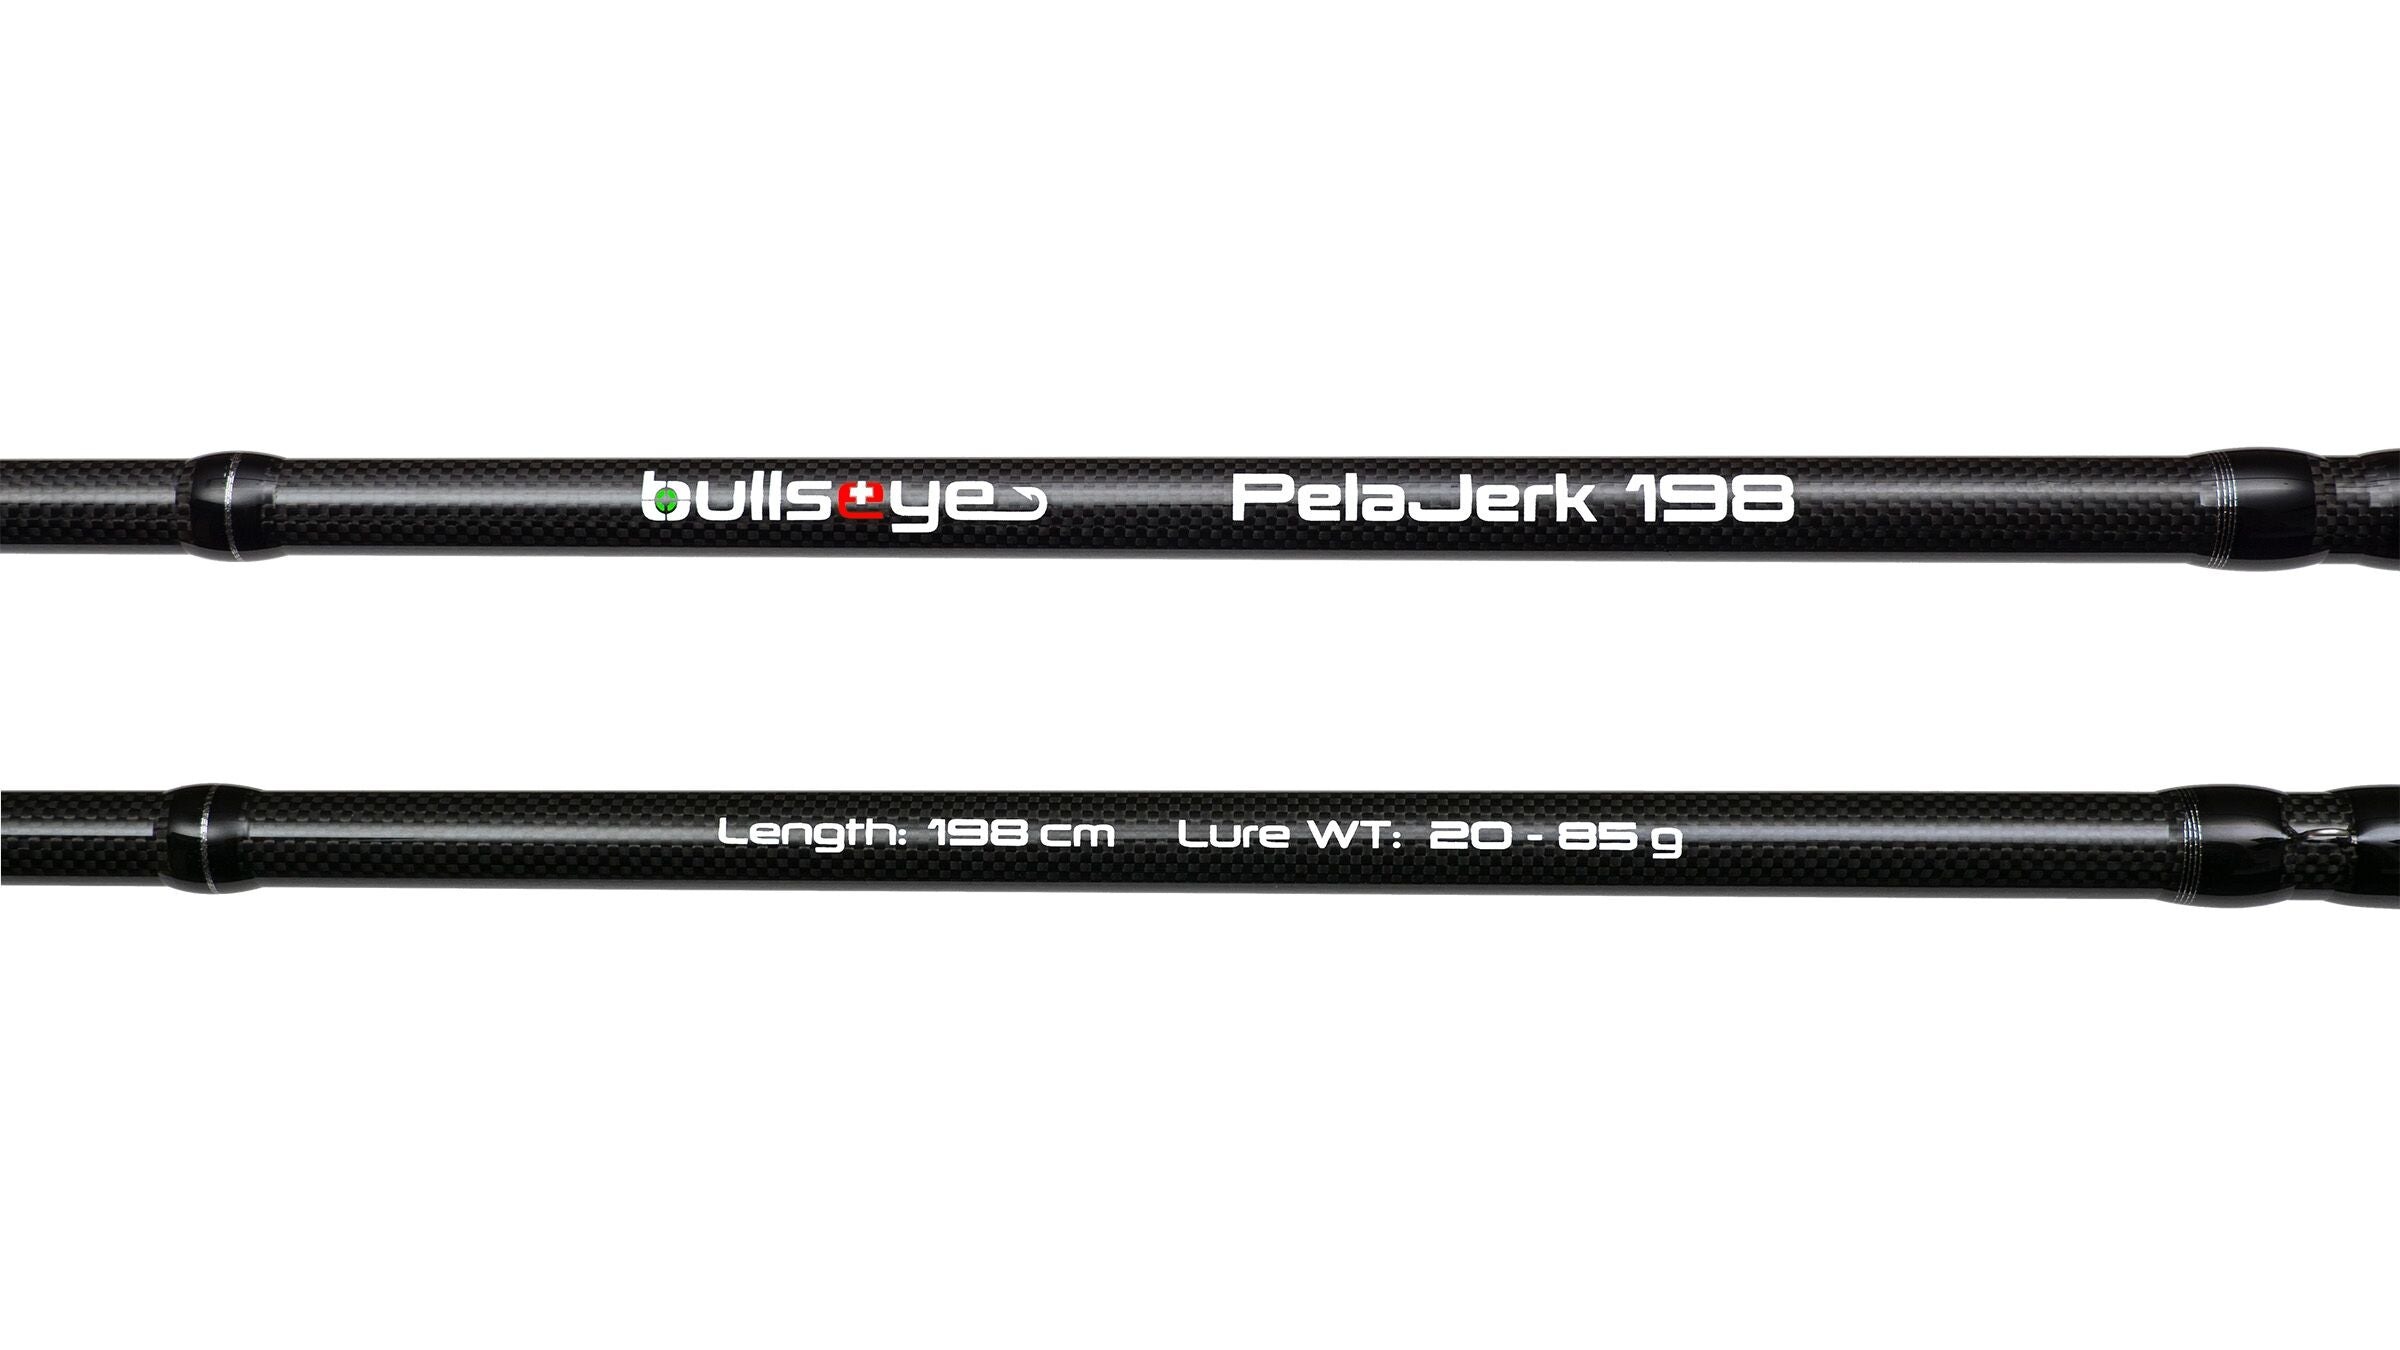 Bullseye PelaJerk 198 198 20 85 g